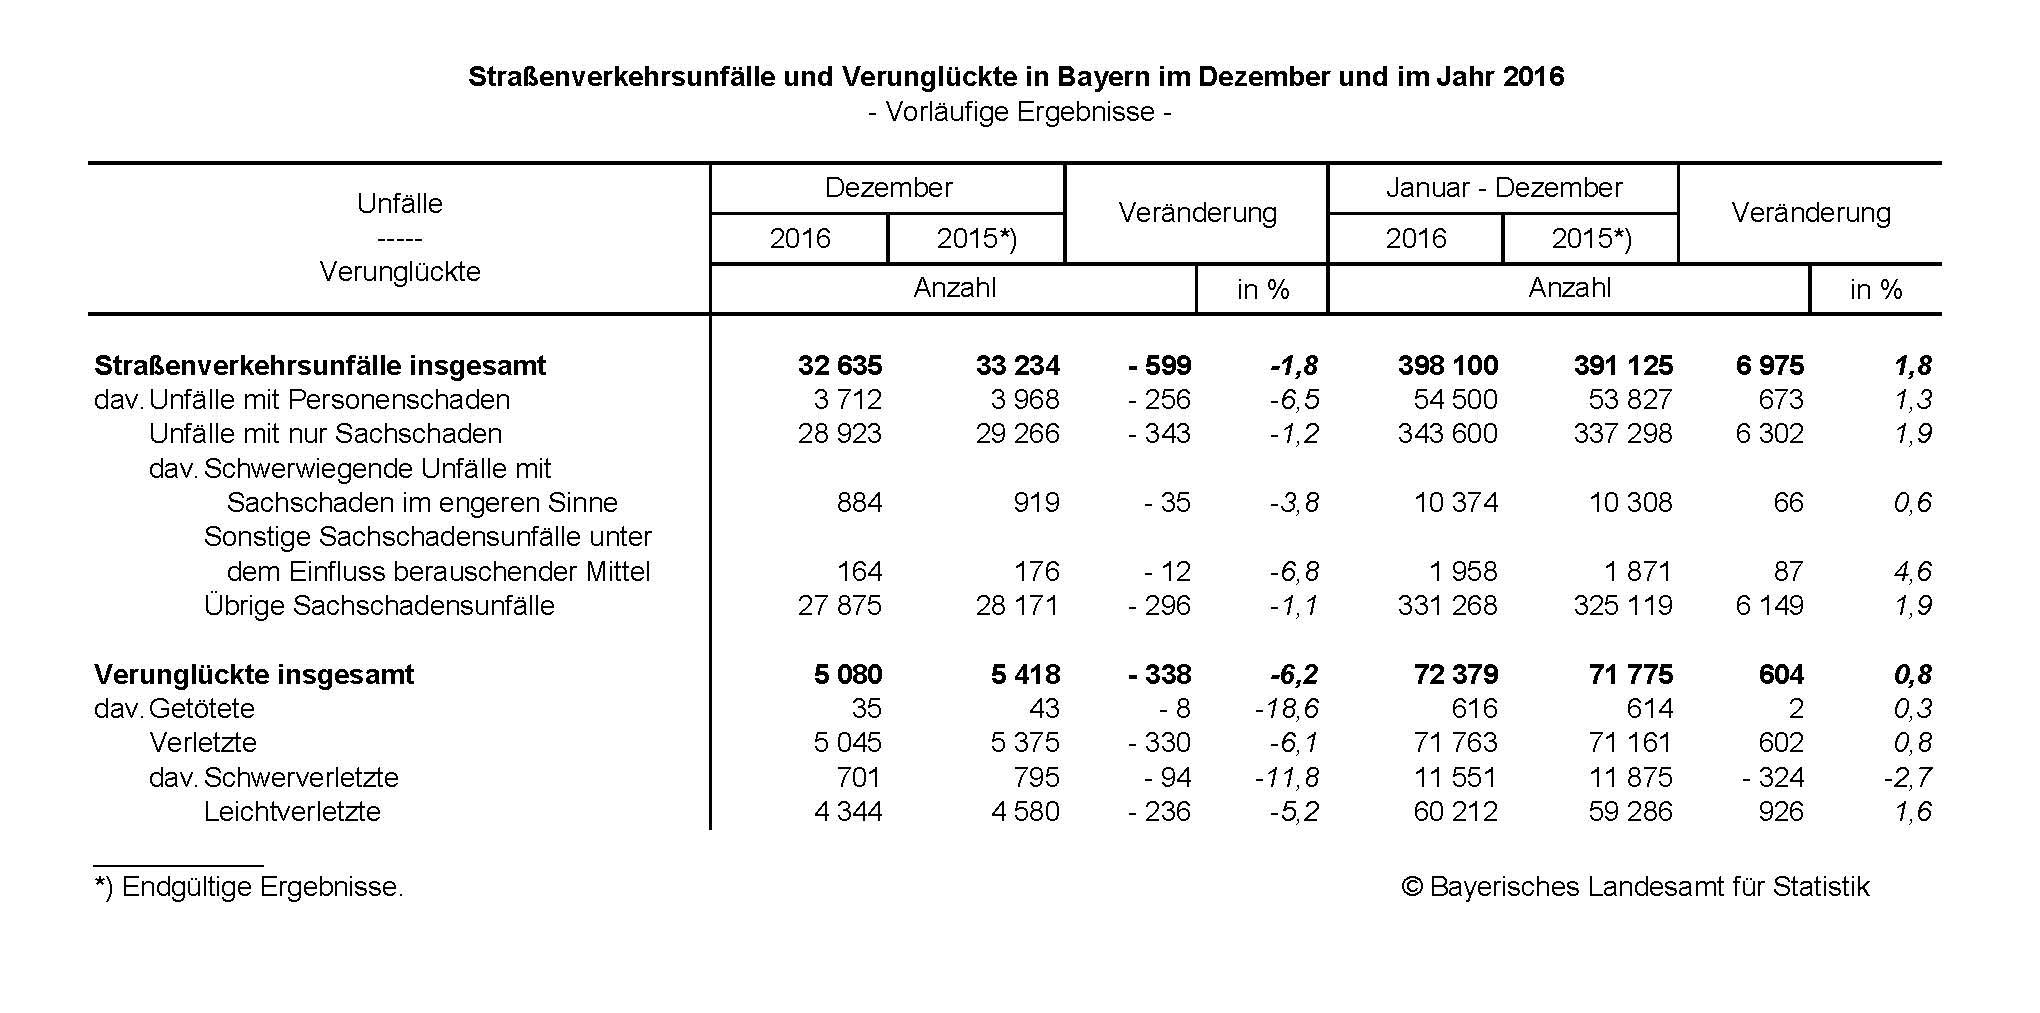 Straßenverkehrsunfälle und Verunglückte in Bayern im Dezember und im Jahr 2016